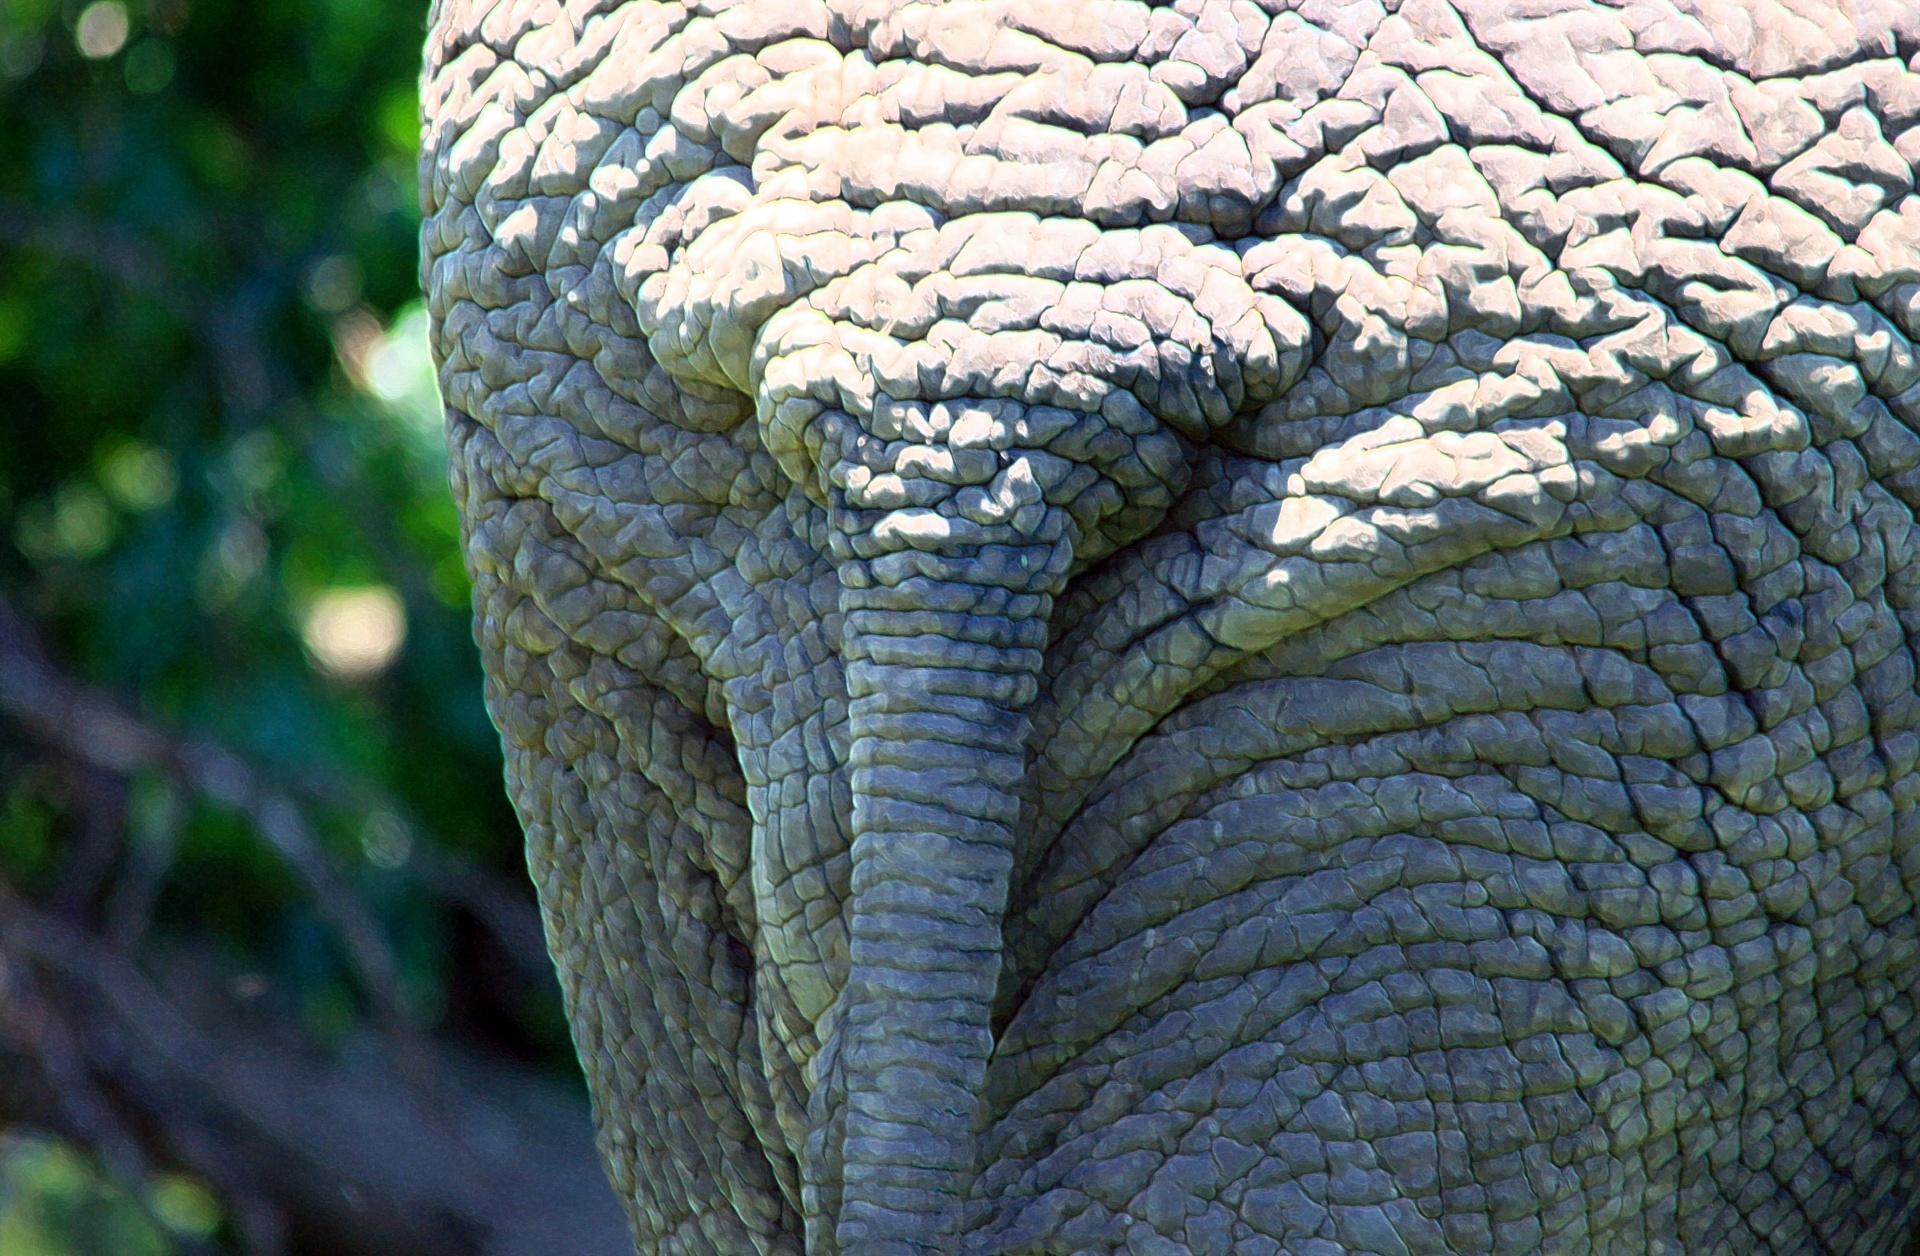 animal elephant african free photo